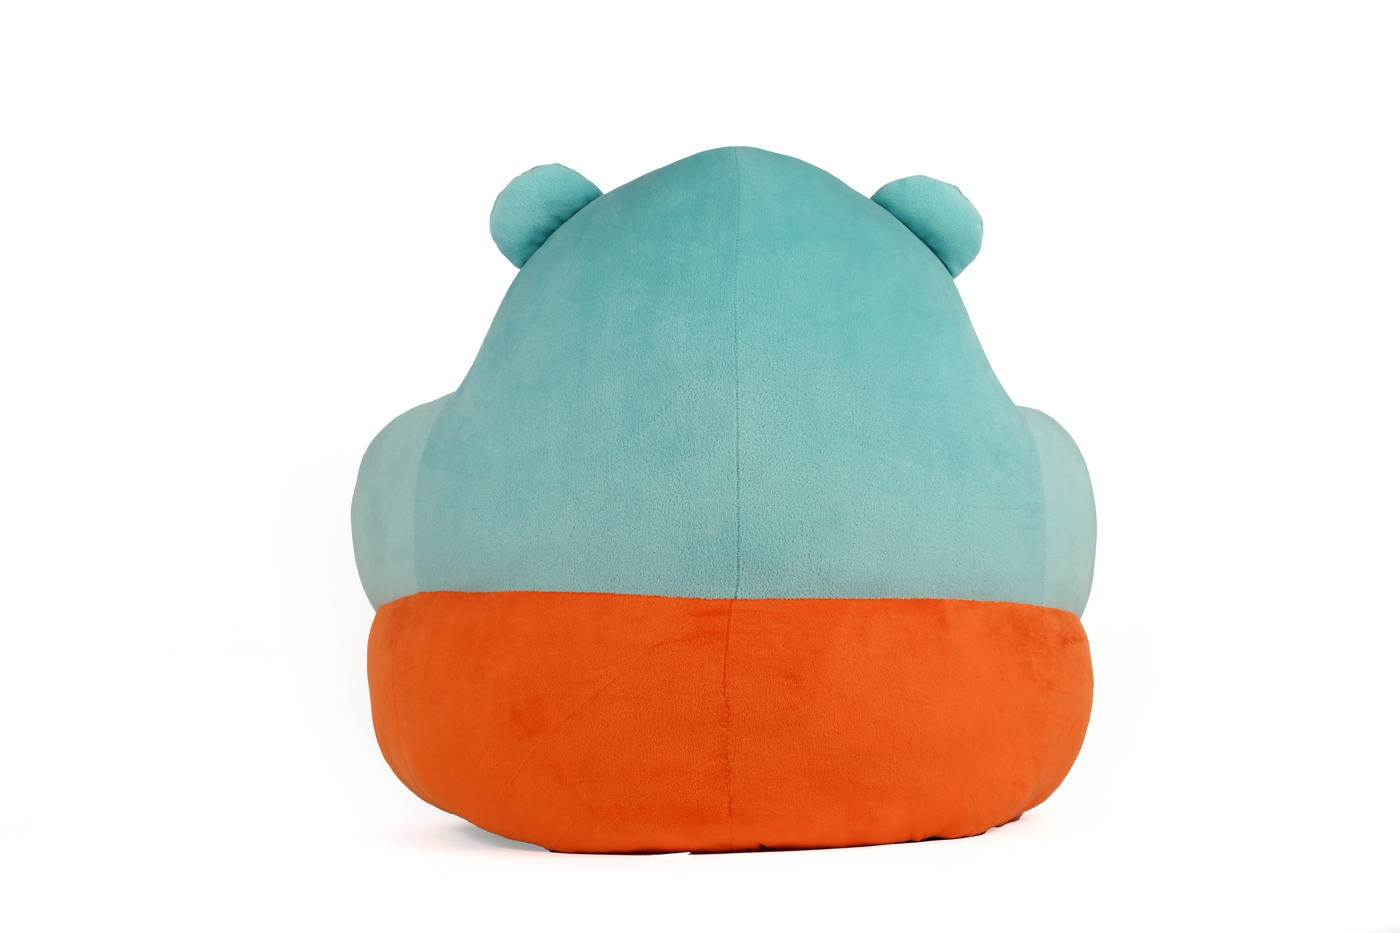 Baby Teddy Cushion Sofa Seat - Sea Blue & Orange